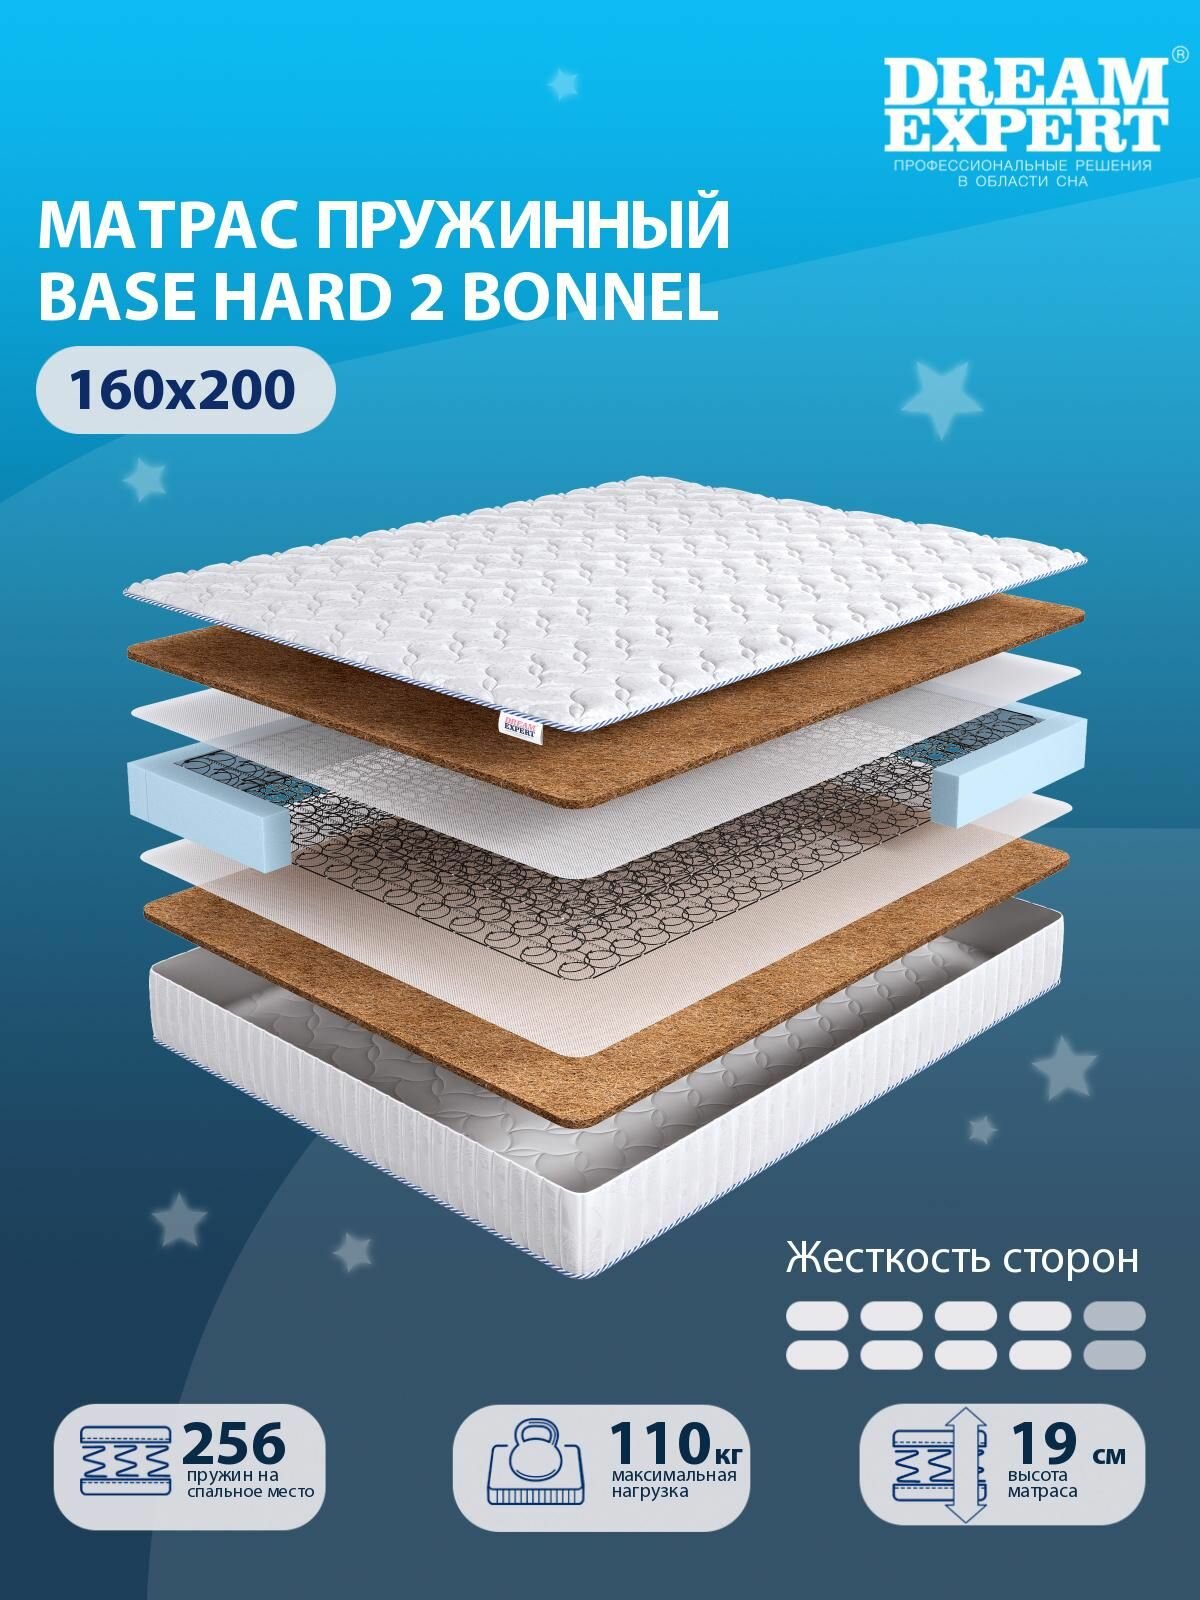 Матрас DreamExpert Base Hard 2 Bonnel выше средней жесткости, двуспальный, зависимый пружинный блок, на кровать 160x200